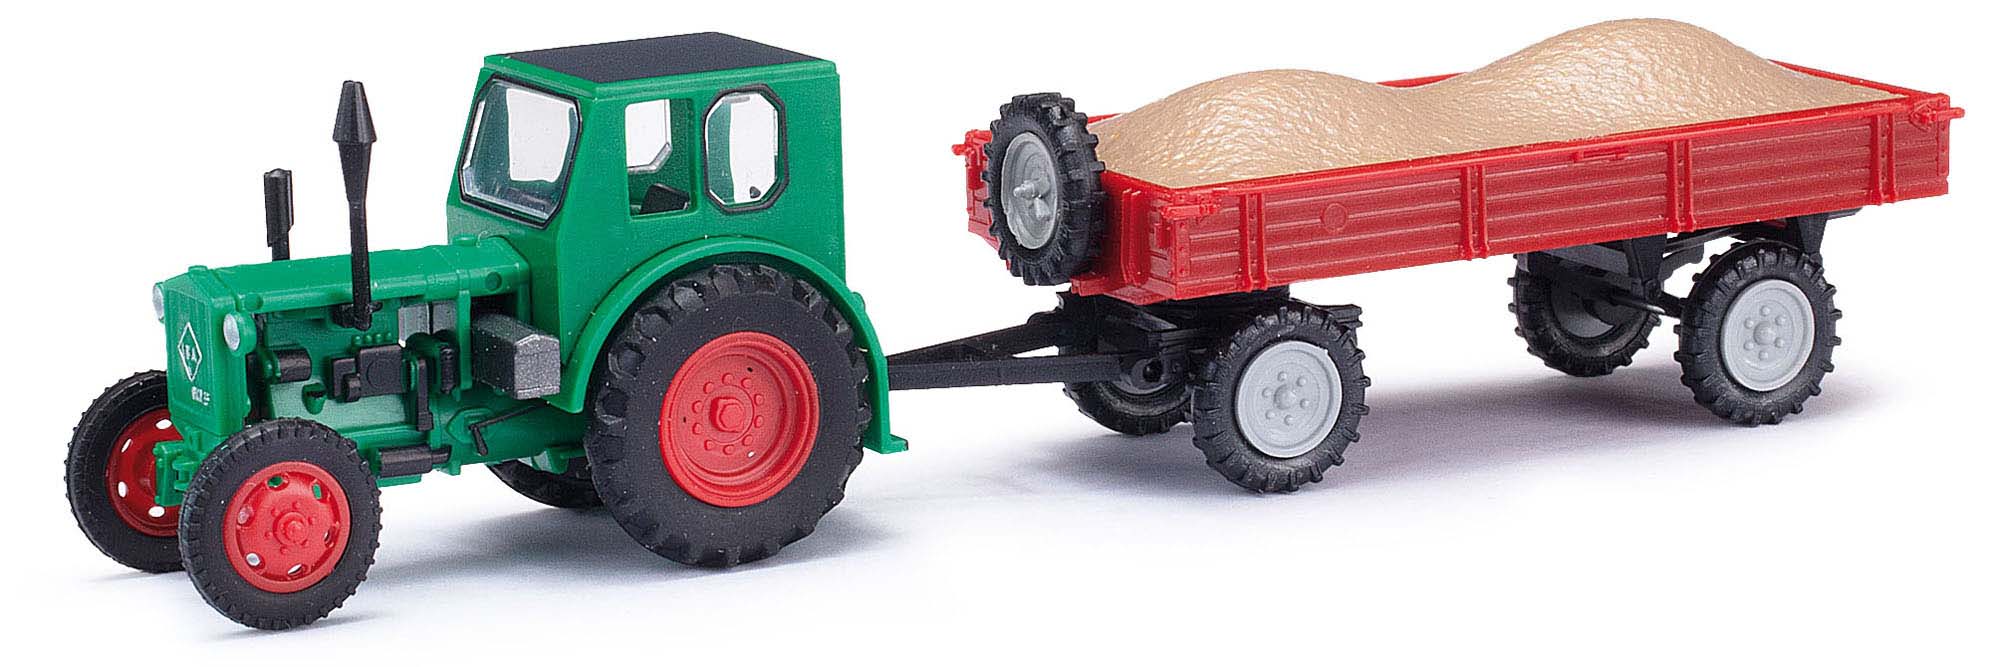 210006422-MH: Traktor Pionier + Anhänger mit Kies-4260458431634